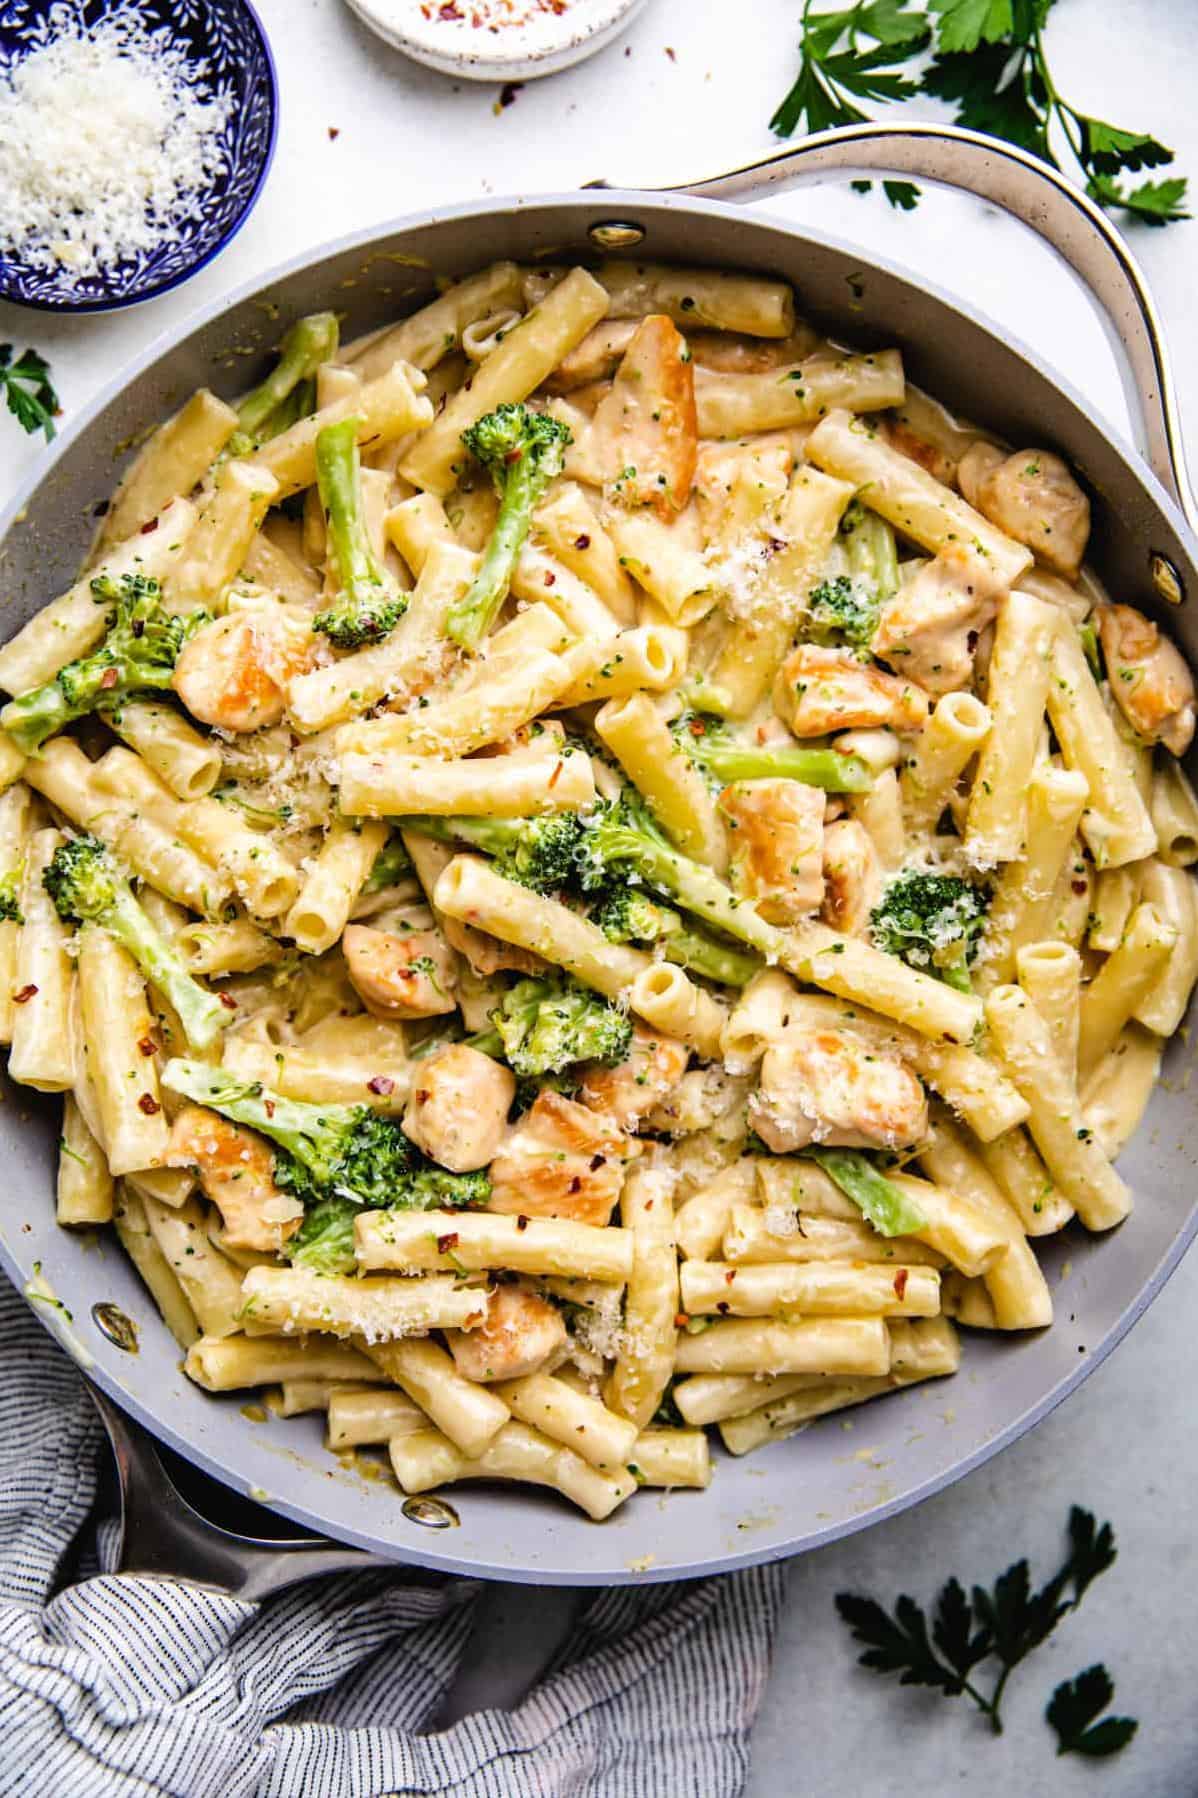 Delicious Ziti with Chicken and Broccoli Recipe